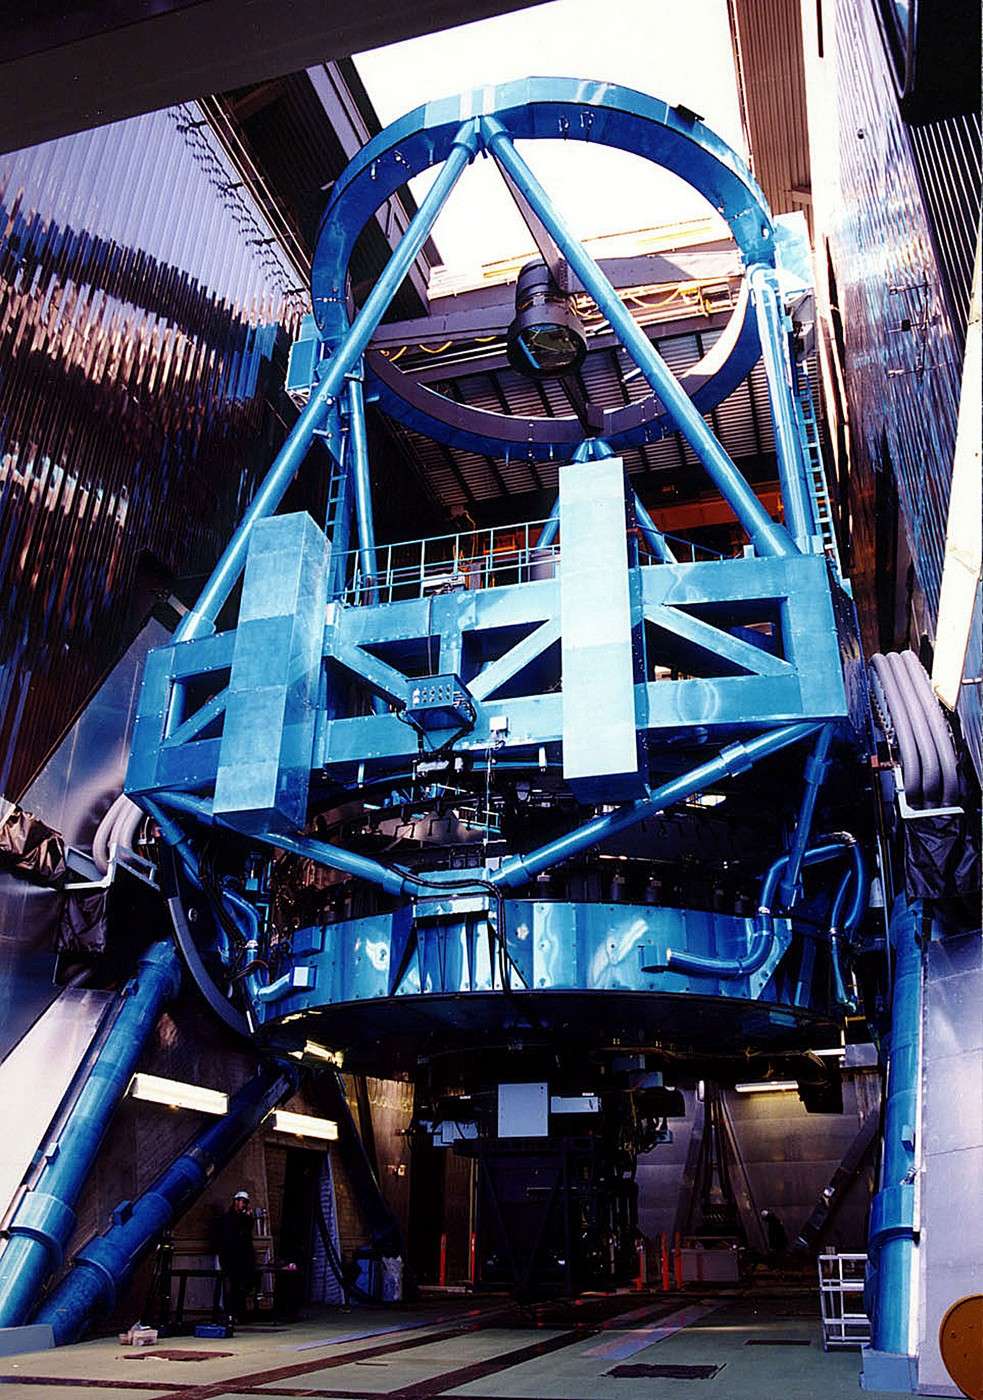 Le télescope japonais Subaru installé à Hawaï a retrouvé tout son potentiel après un sérieux incident en juillet 2011. © Subaru Telescope